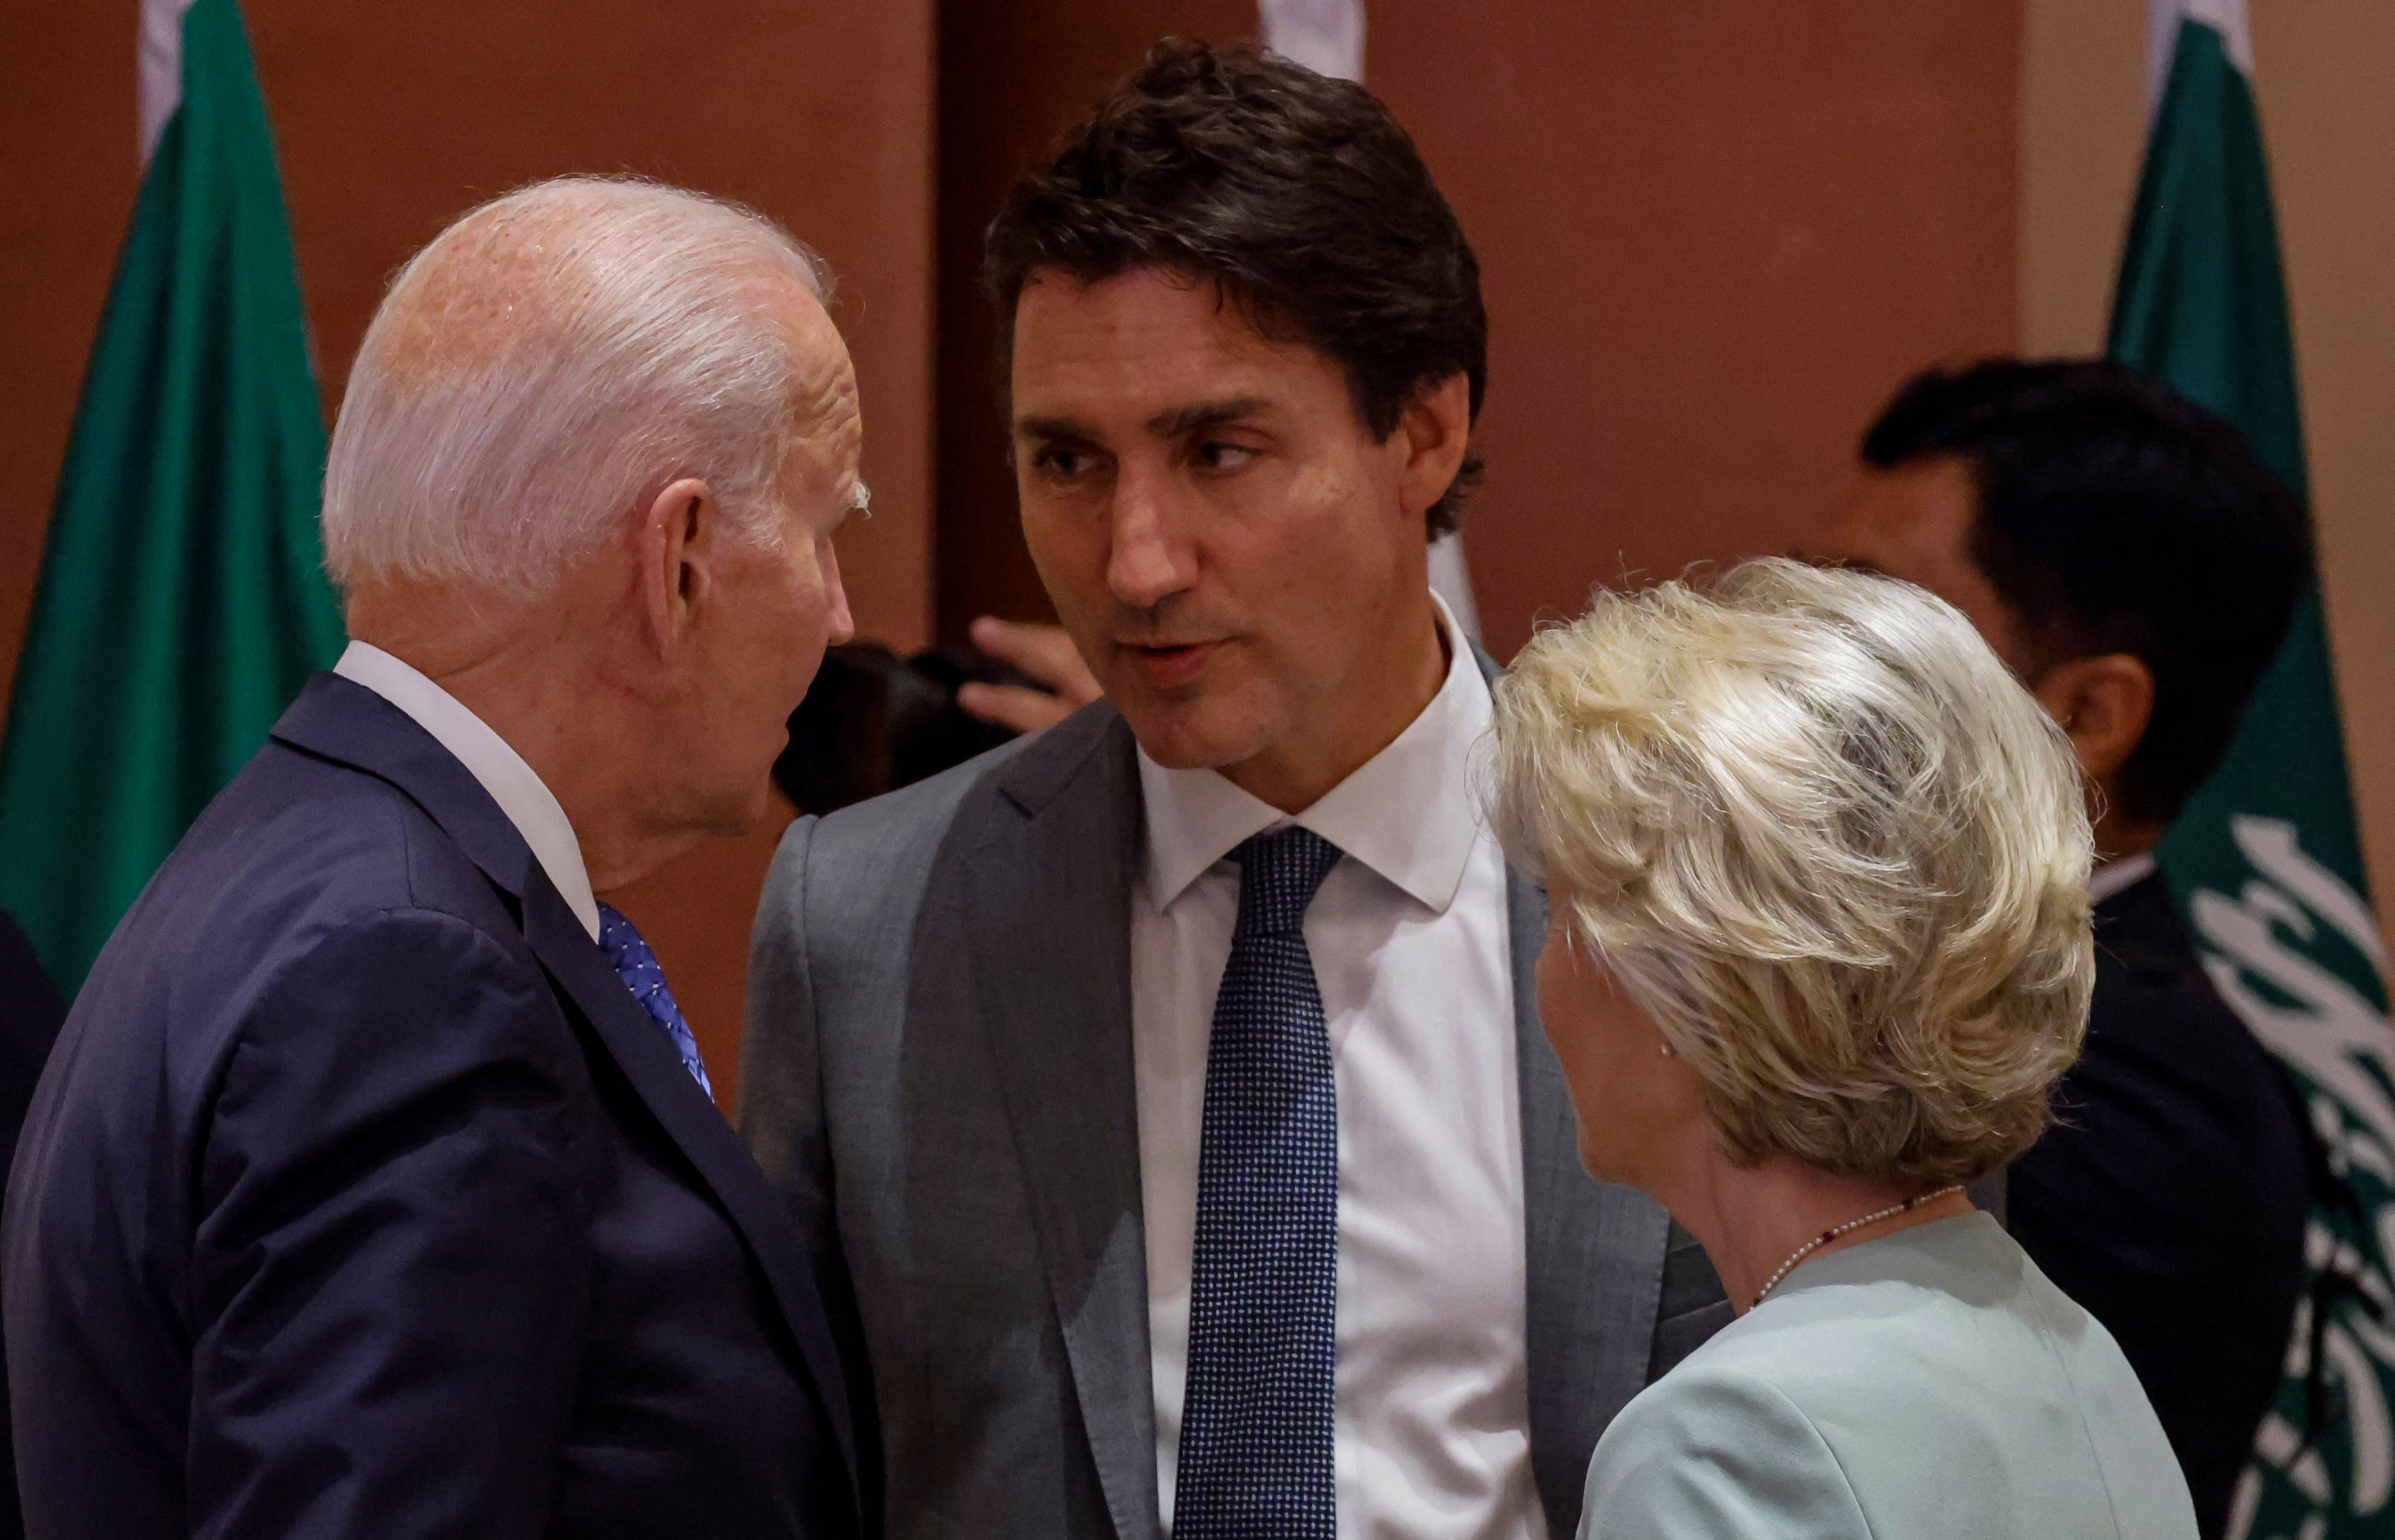 US president Joe Biden (left), Canada’s prime minister Justin Trudeau (centre) and European Commission president Ursula von der Leyen speak with each other at G20 Summit in Delhi